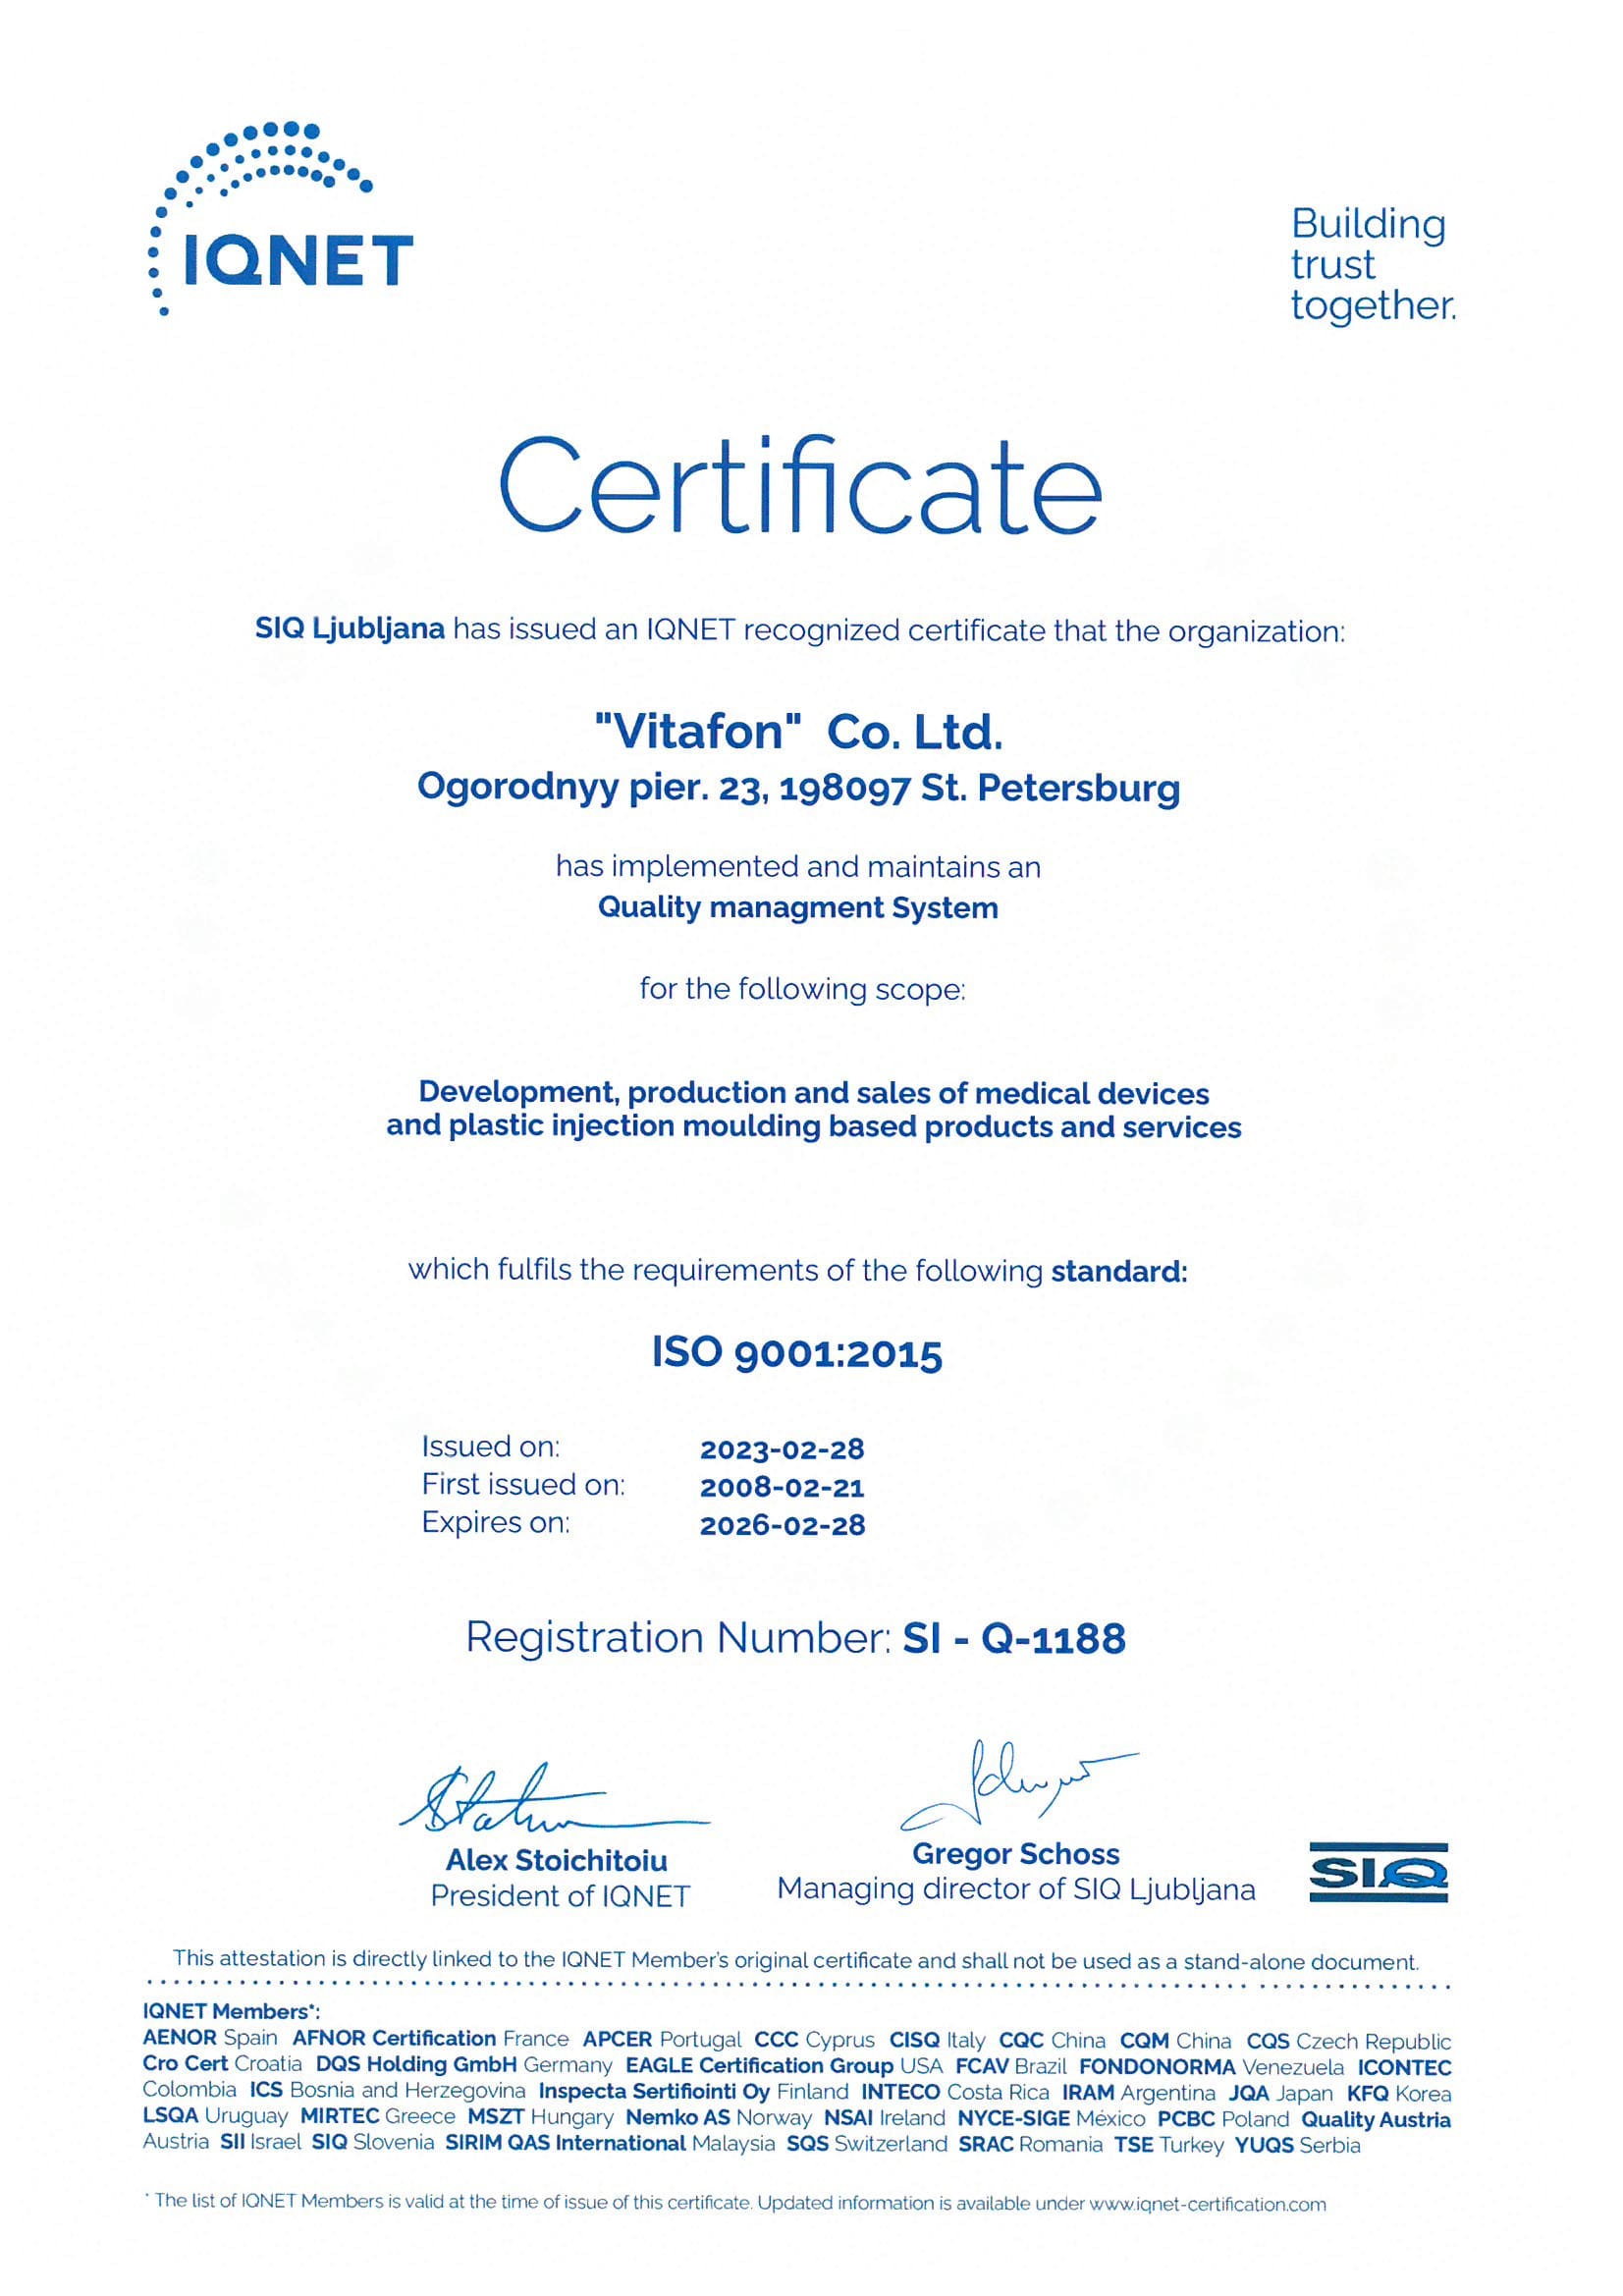 Европейский сертификат о соответствии системы менеджмента качества стандарту ISO 9001:2008